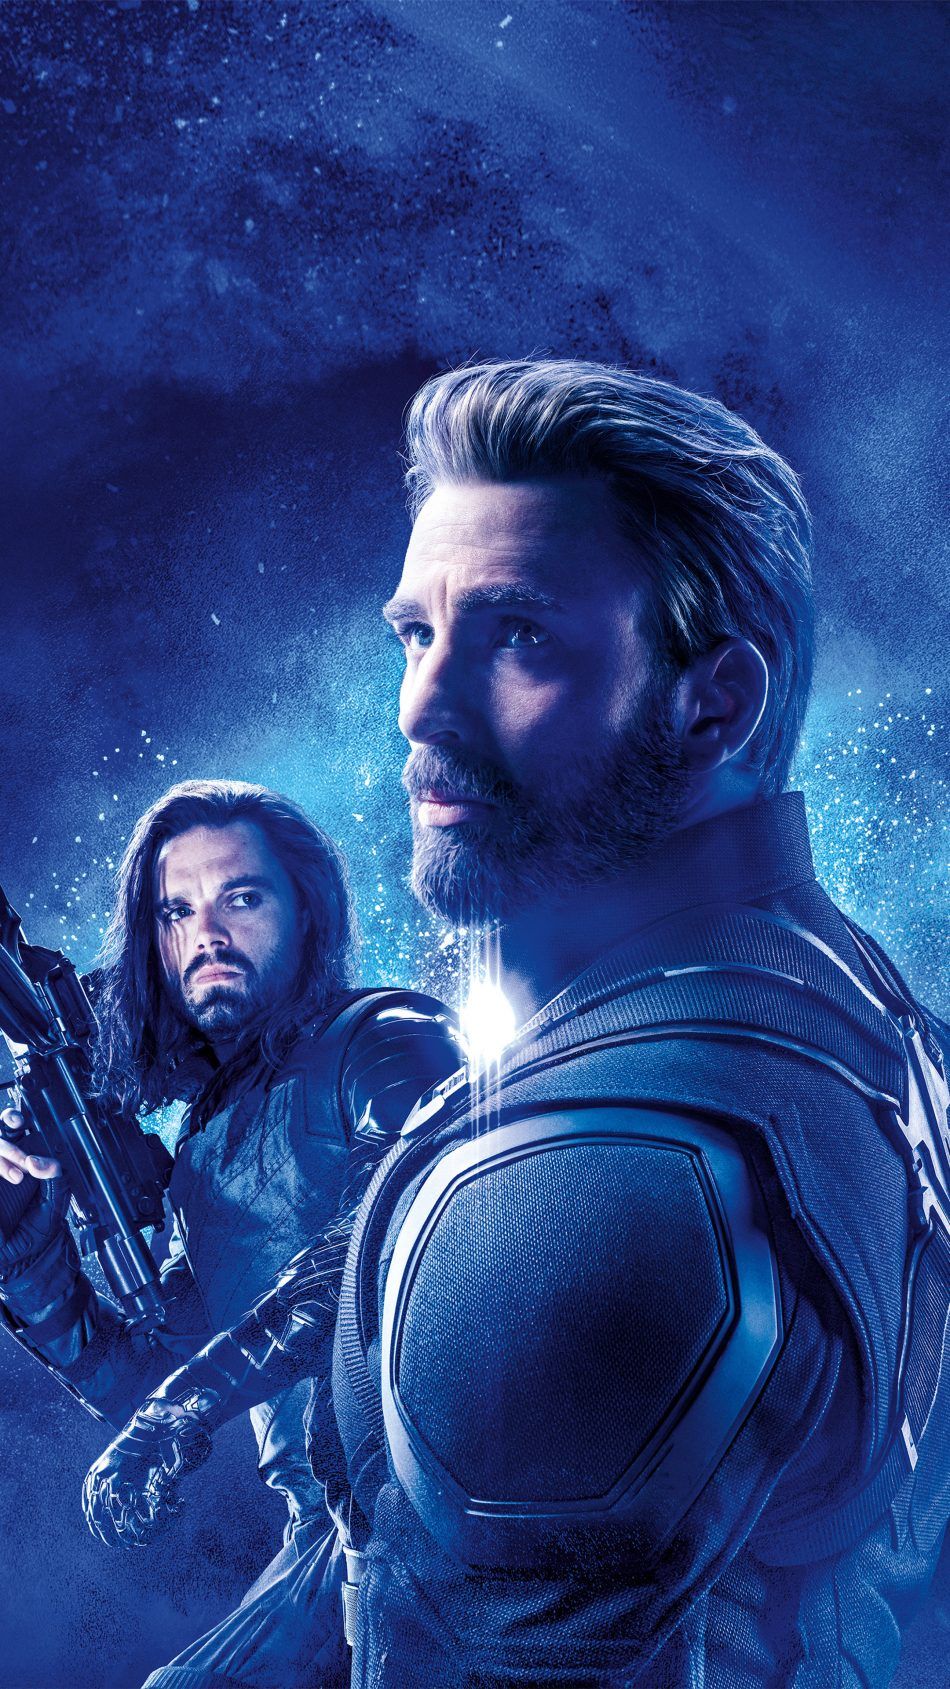 Captain America Bucky Barnes In Avengers Endgame 4k Ultra HD